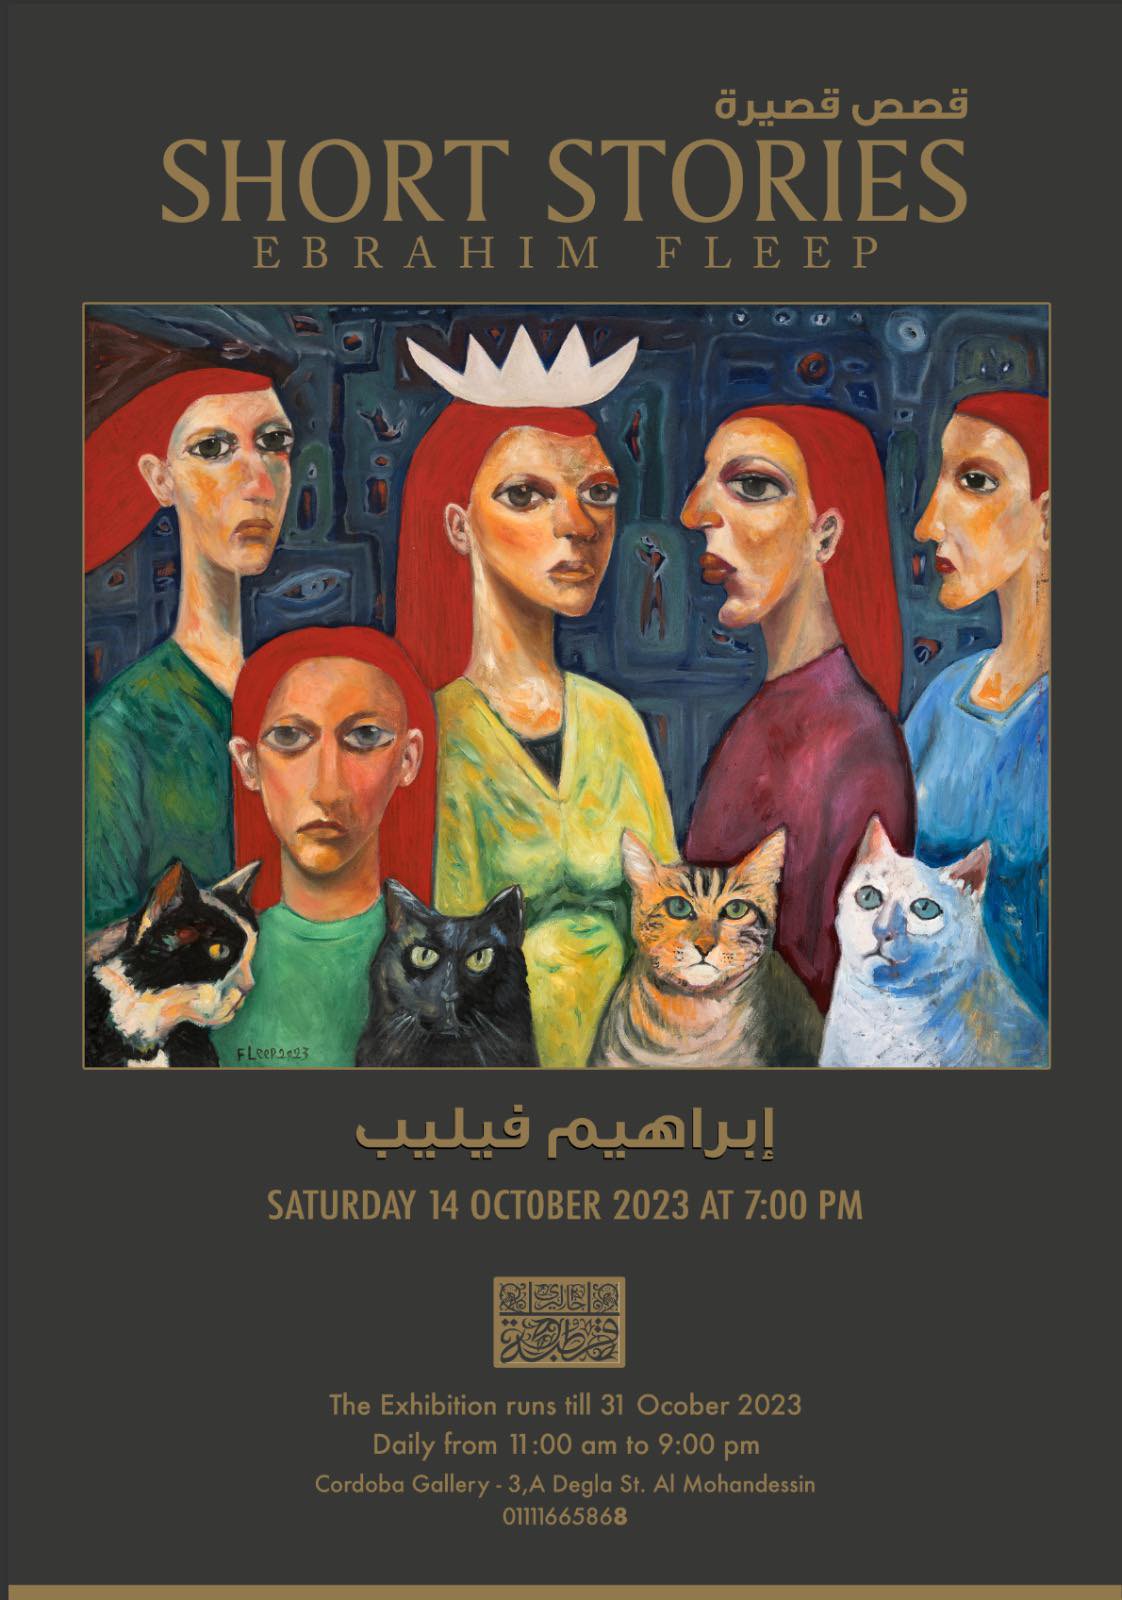 افتتاح معرض (قصص قصيرة) للفنان إبراهيم فيليب بجاليري قرطبة